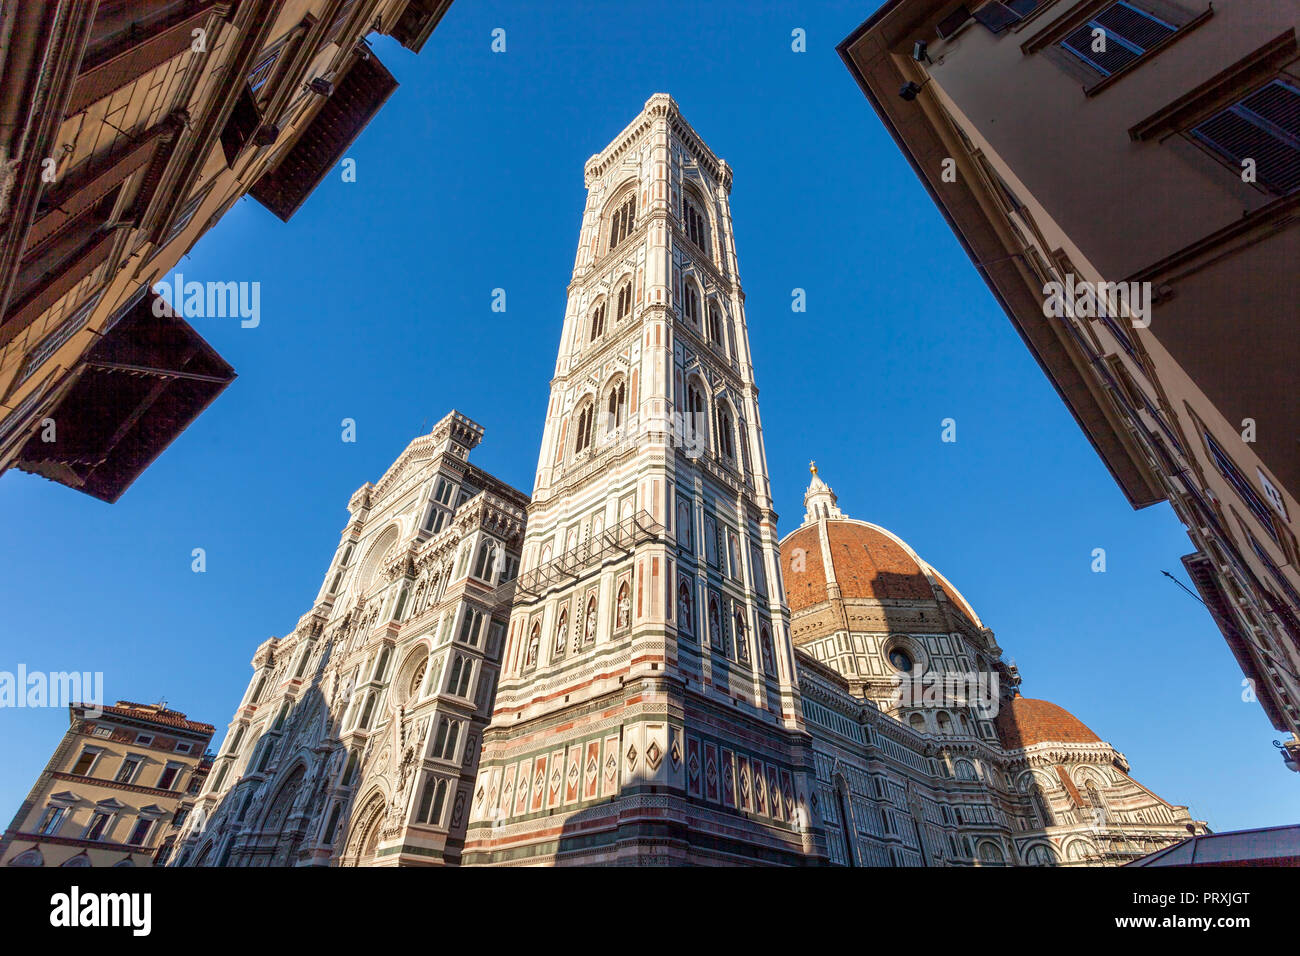 Duomo di Firenze - Cattedrale di Santa Maria del Fiore, Florence, Tuscany, Italy Stock Photo